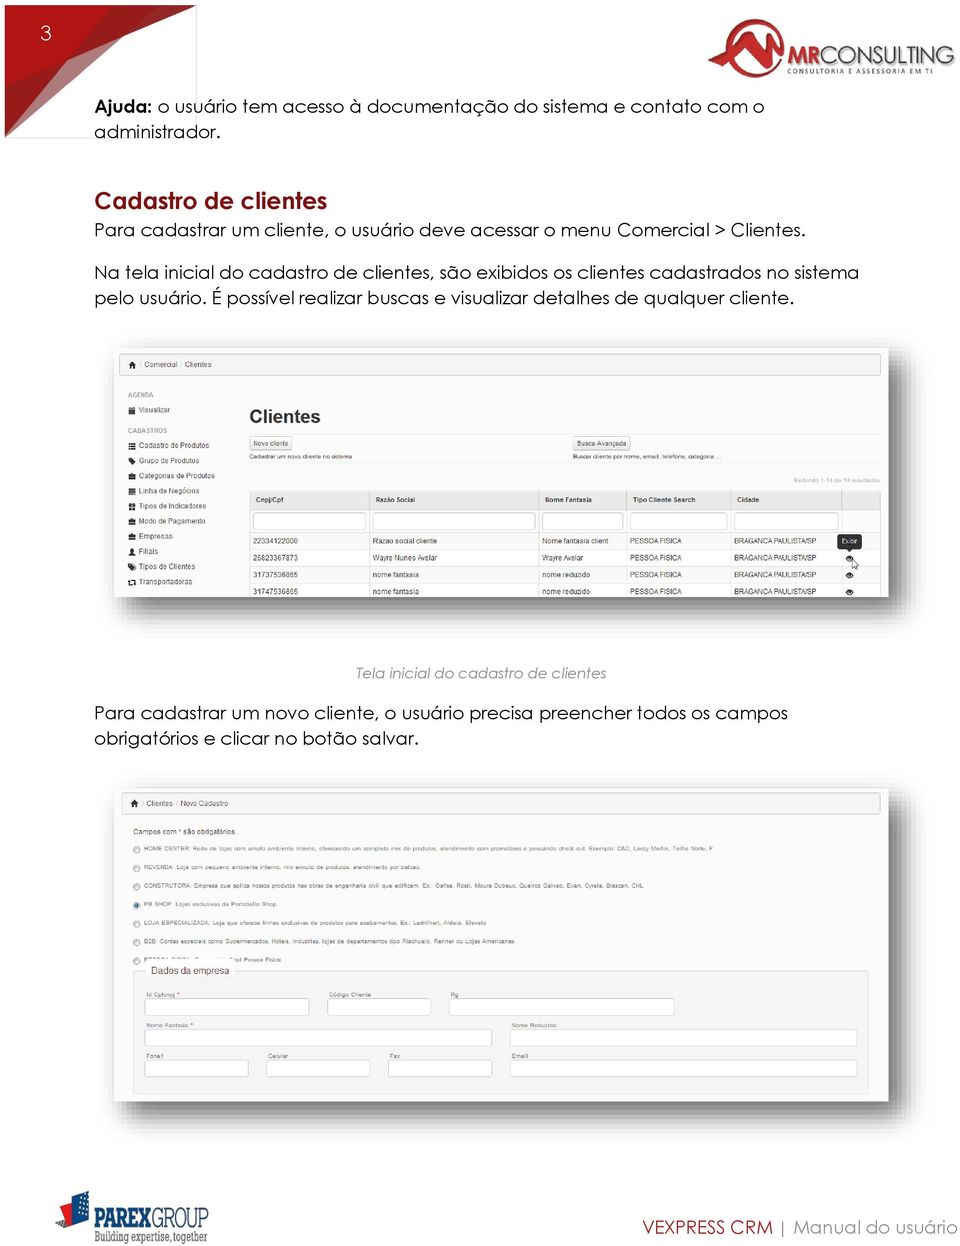 Na tela inicial do cadastro de clientes, são exibidos os clientes cadastrados no sistema pelo usuário.